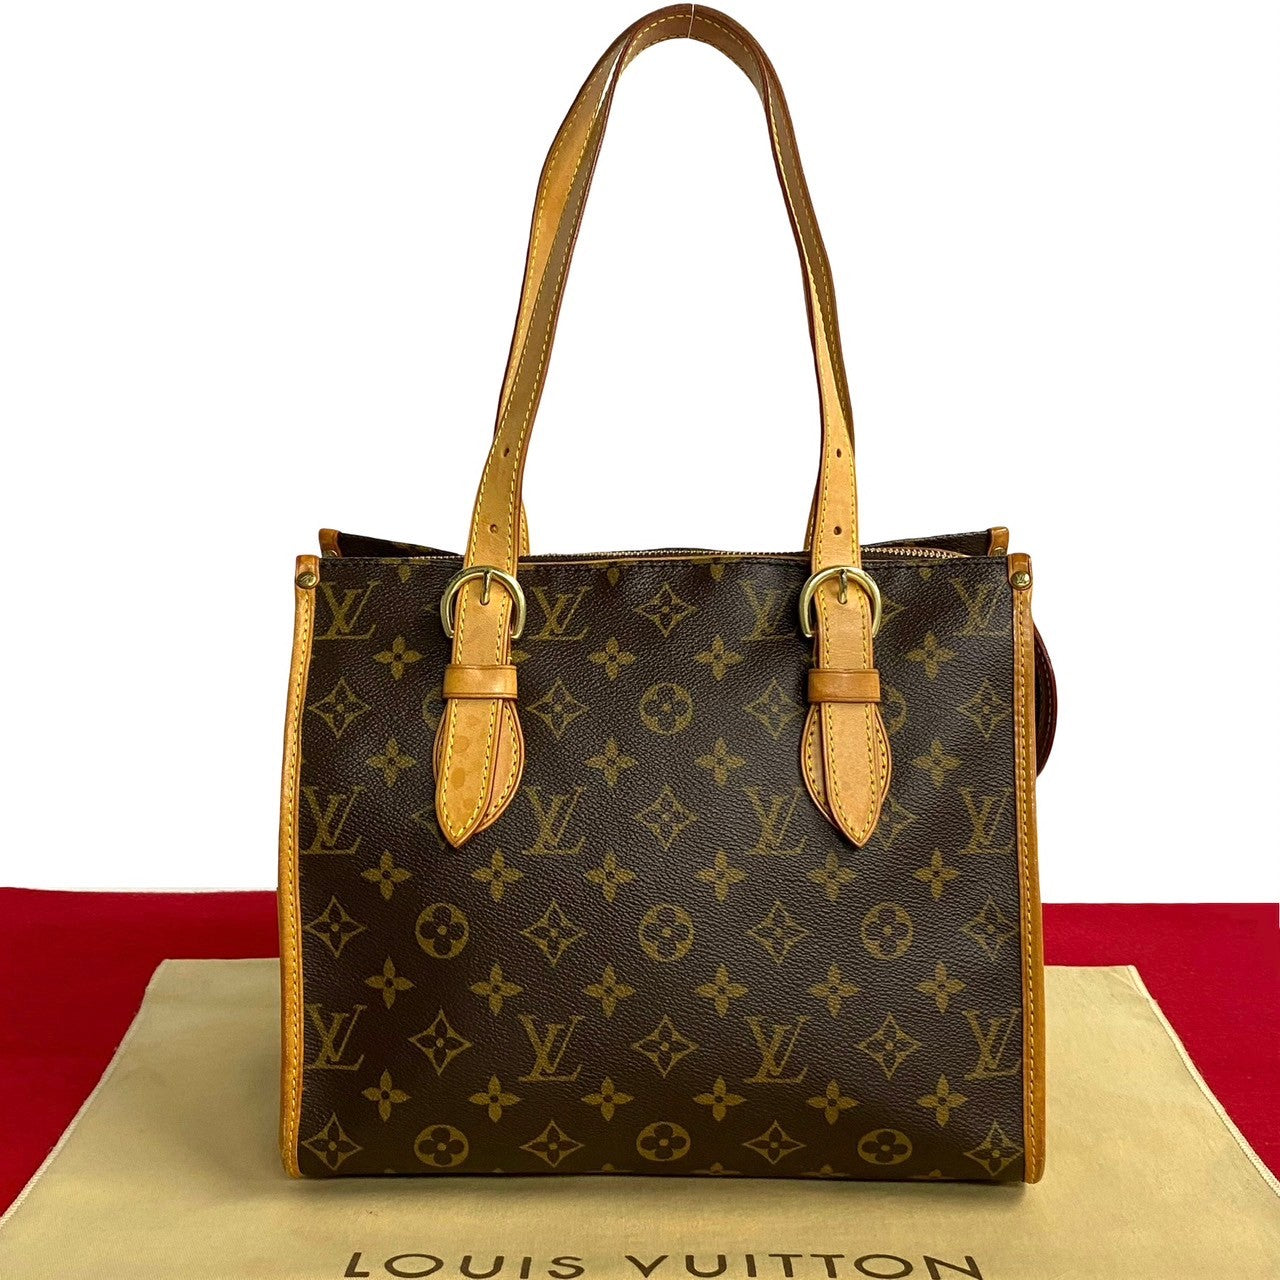 Louis Vuitton Popincourt Haut Canvas Shoulder Bag M40007 in Good condition